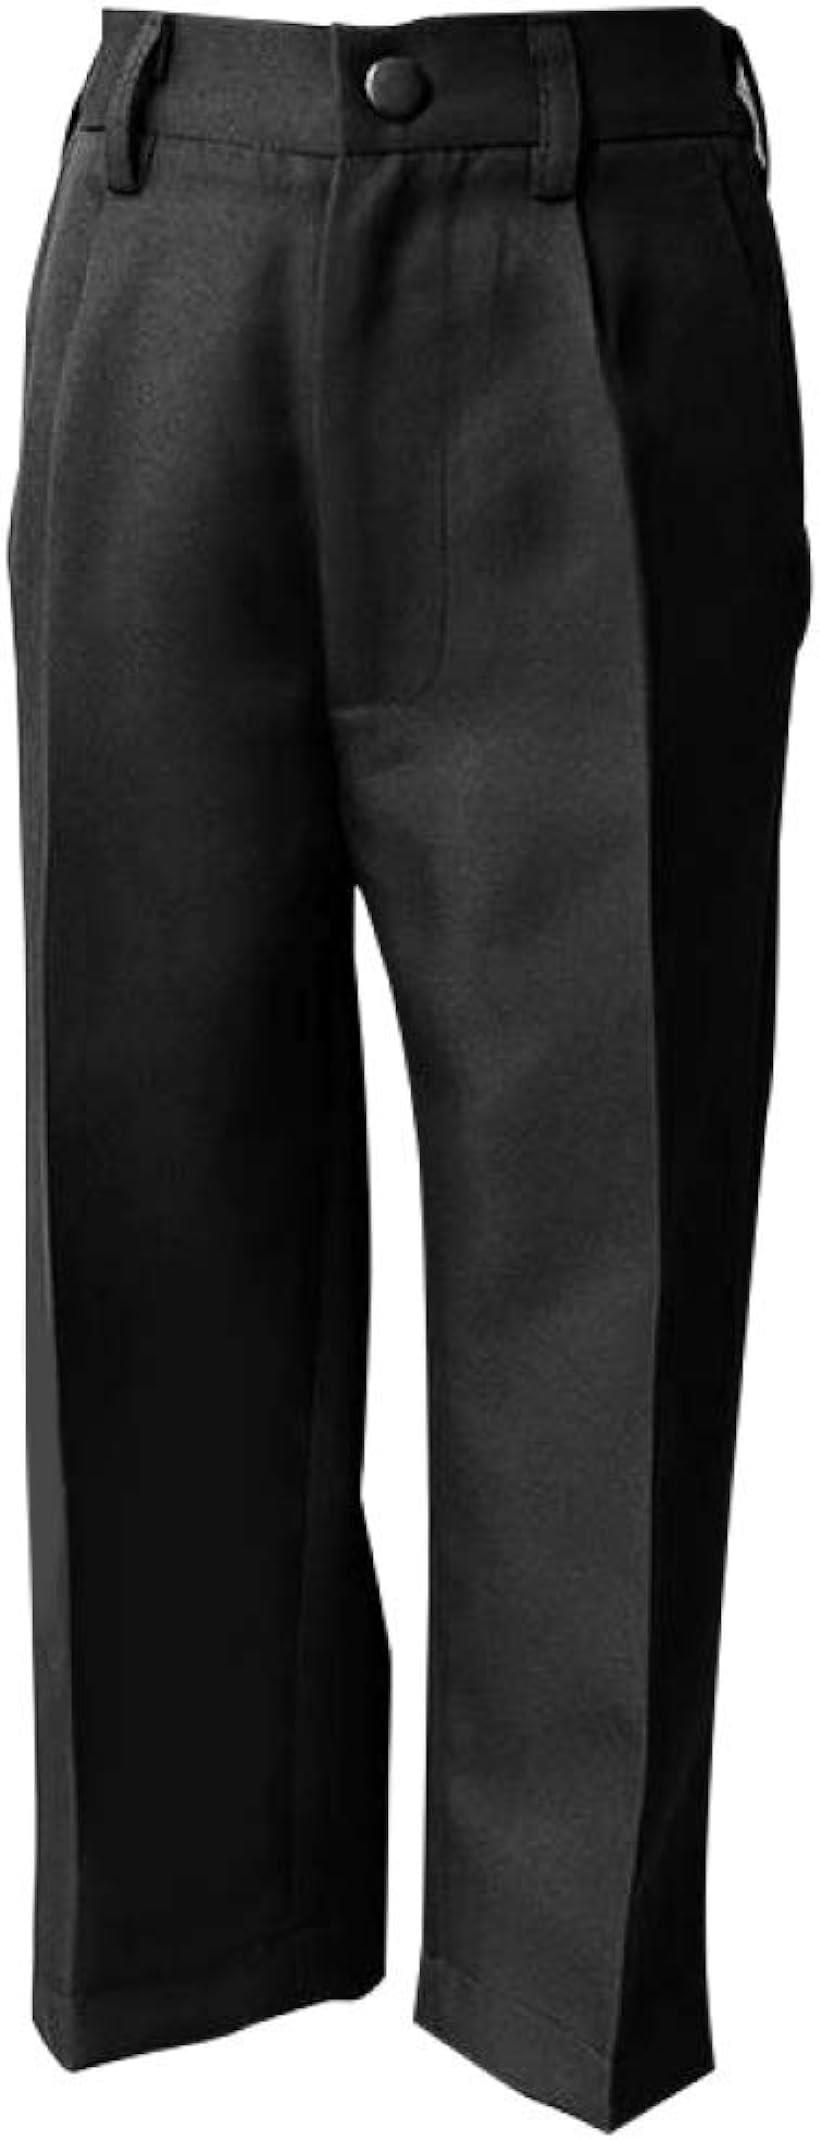 （ルノン）Lunon 子供 フォーマル 男の子 フォーマルズボン キッズ スーツパンツ黒(160, ブラック)